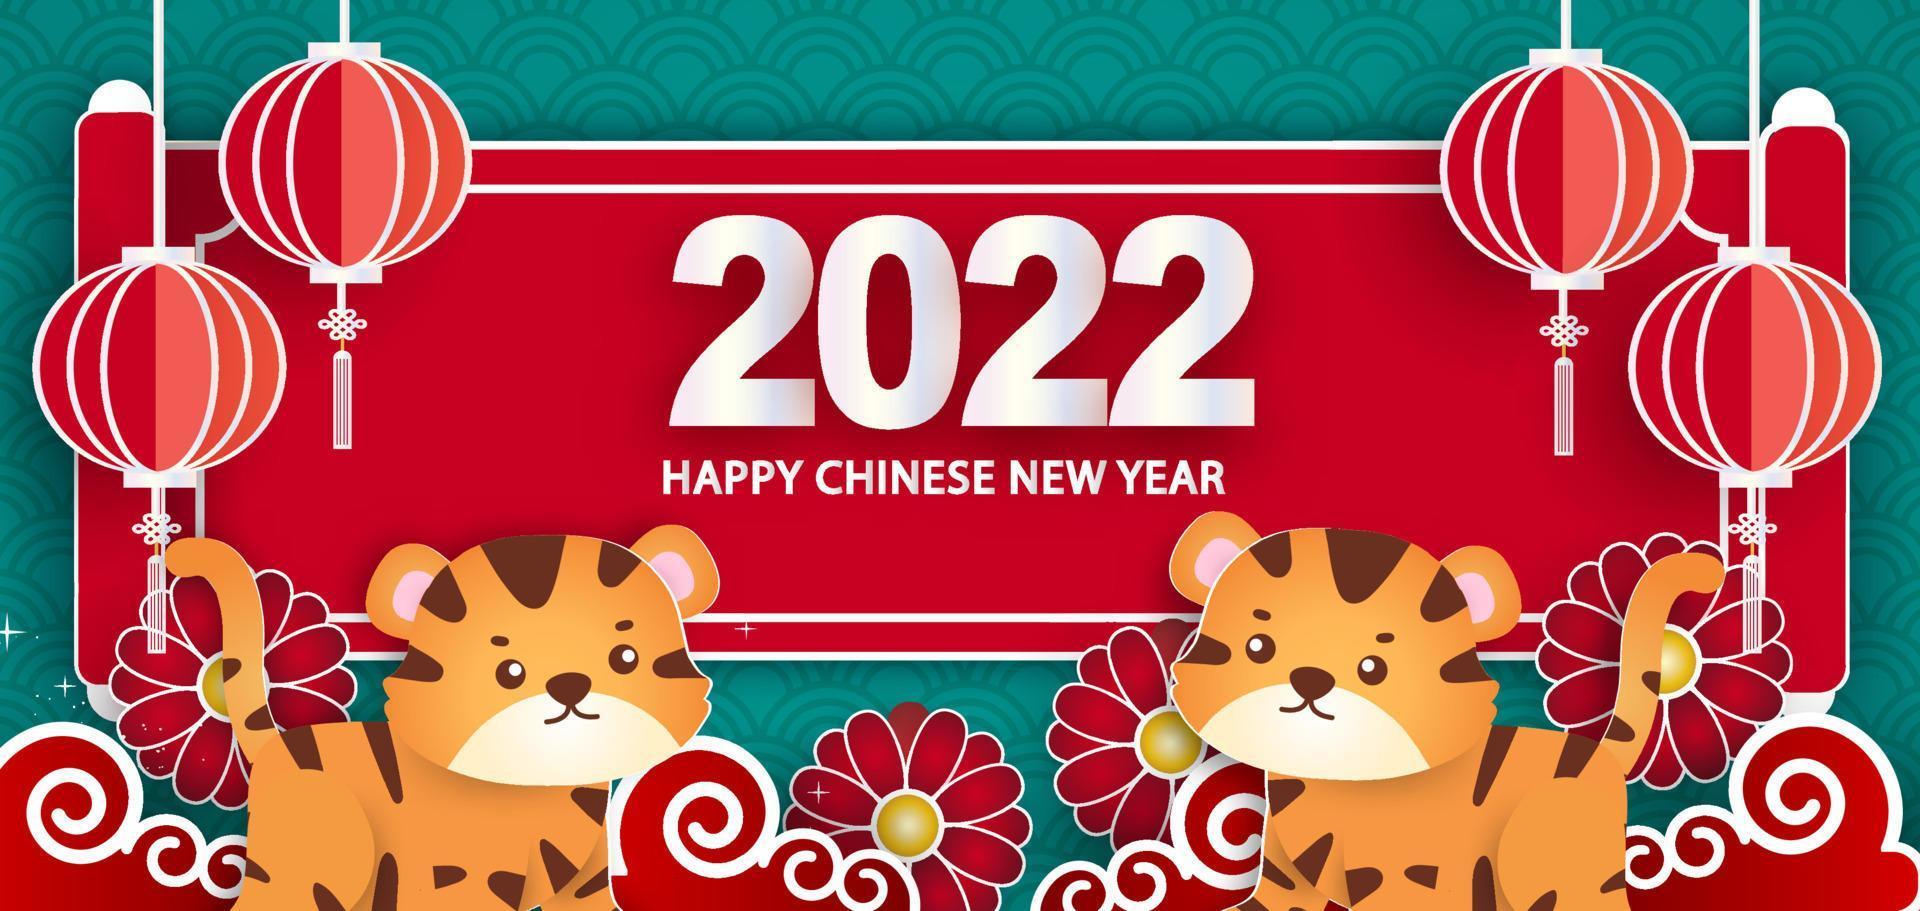 ano novo chinês 2022 banner do ano do tigre em estilo de corte de papel vetor